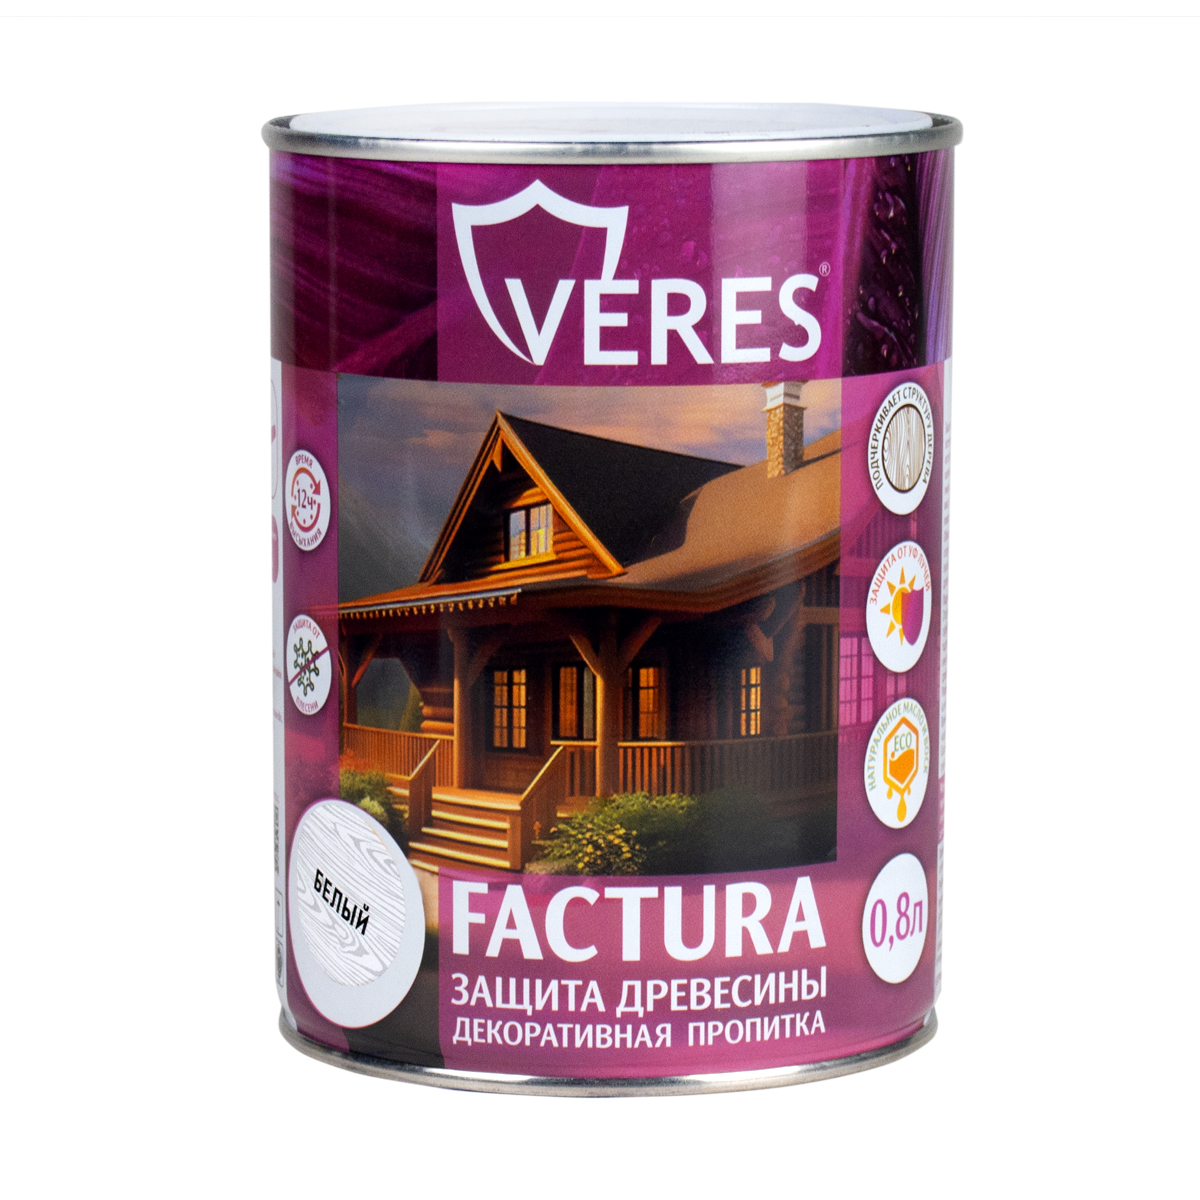 Декоративная пропитка для дерева Veres Factura, полуматовая, 0,8 л, белая пропитка veres